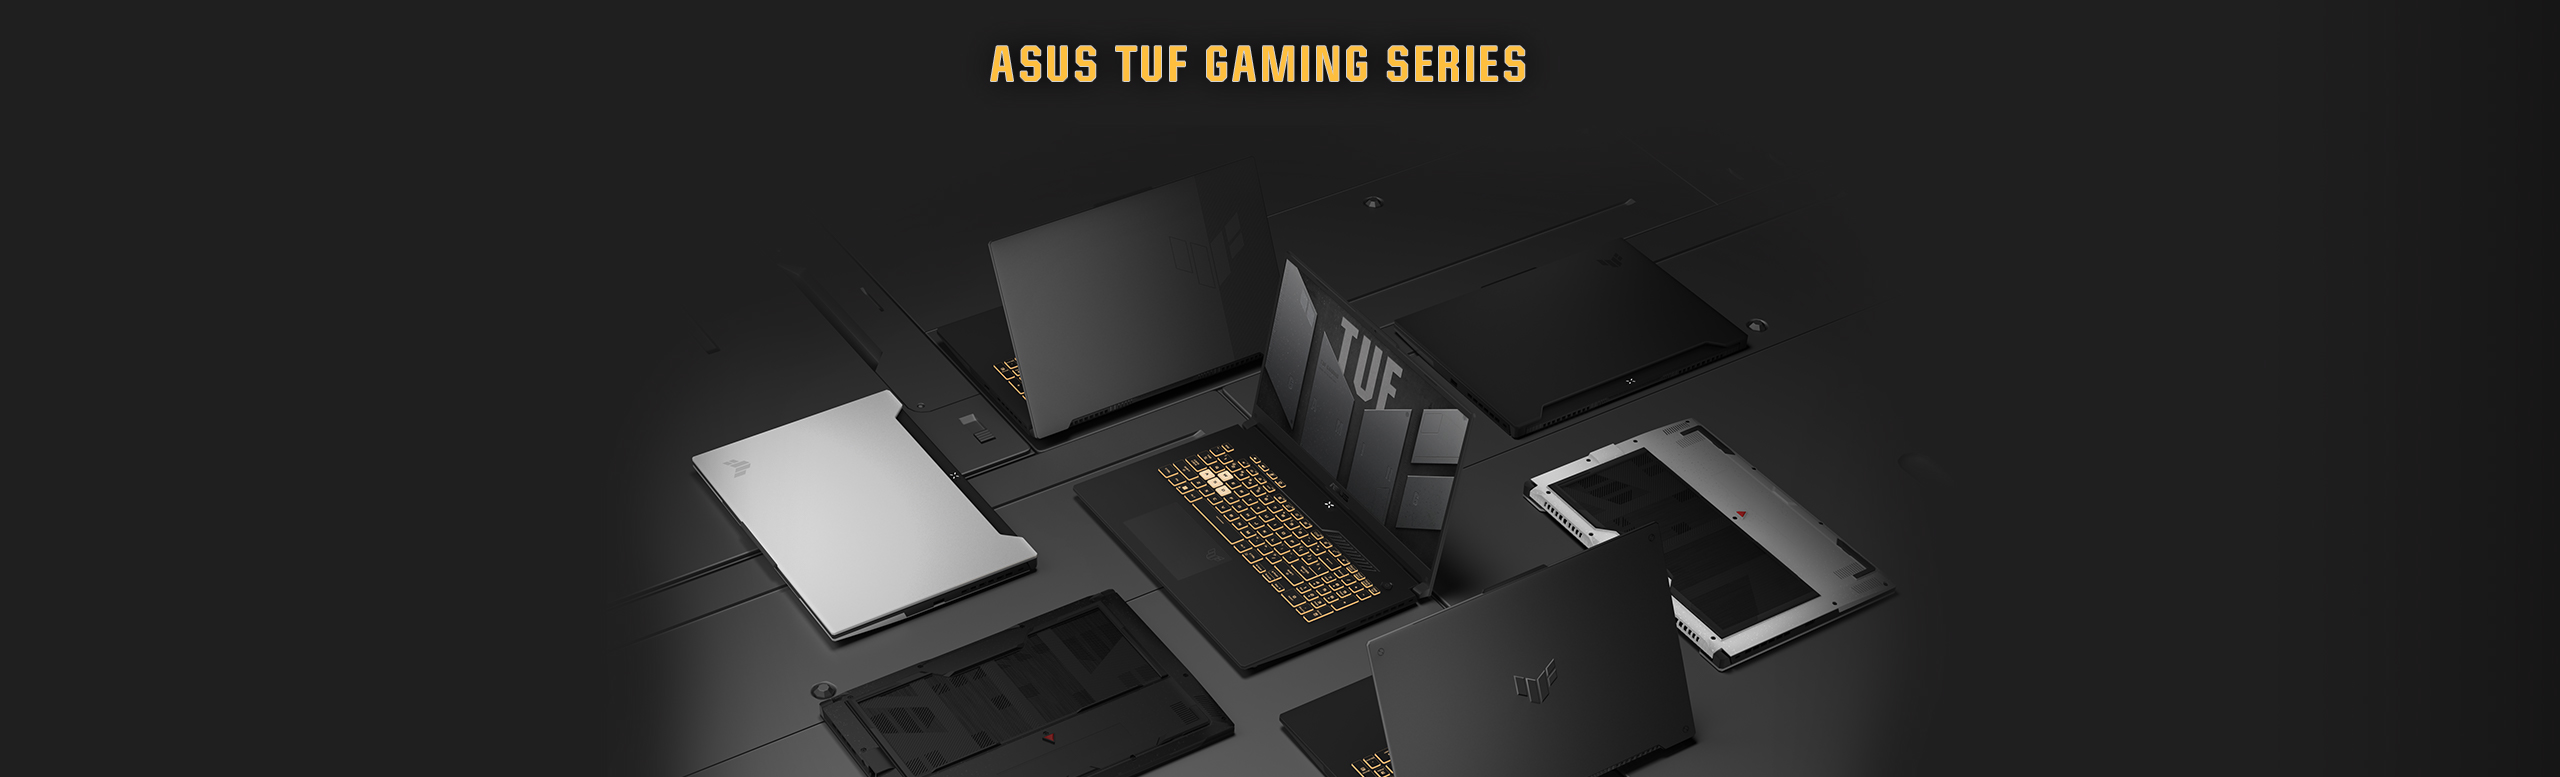 ASUS TUF Gaming Series / Get TUF. Game Tough.